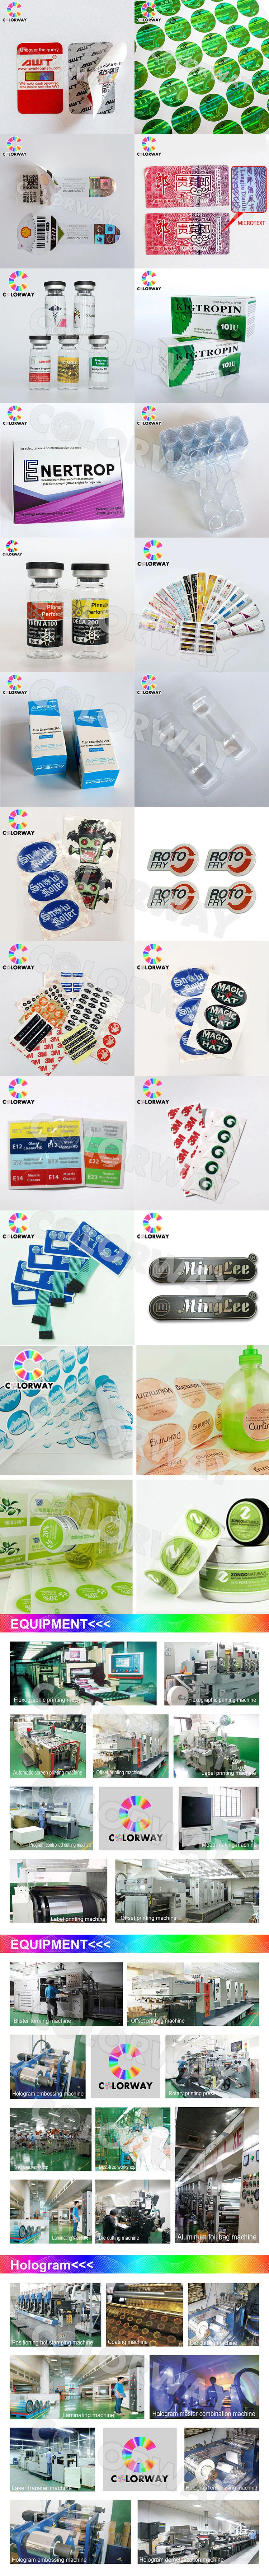 Eco-Friendly Material Cmyk Printed Waterproof Food Label